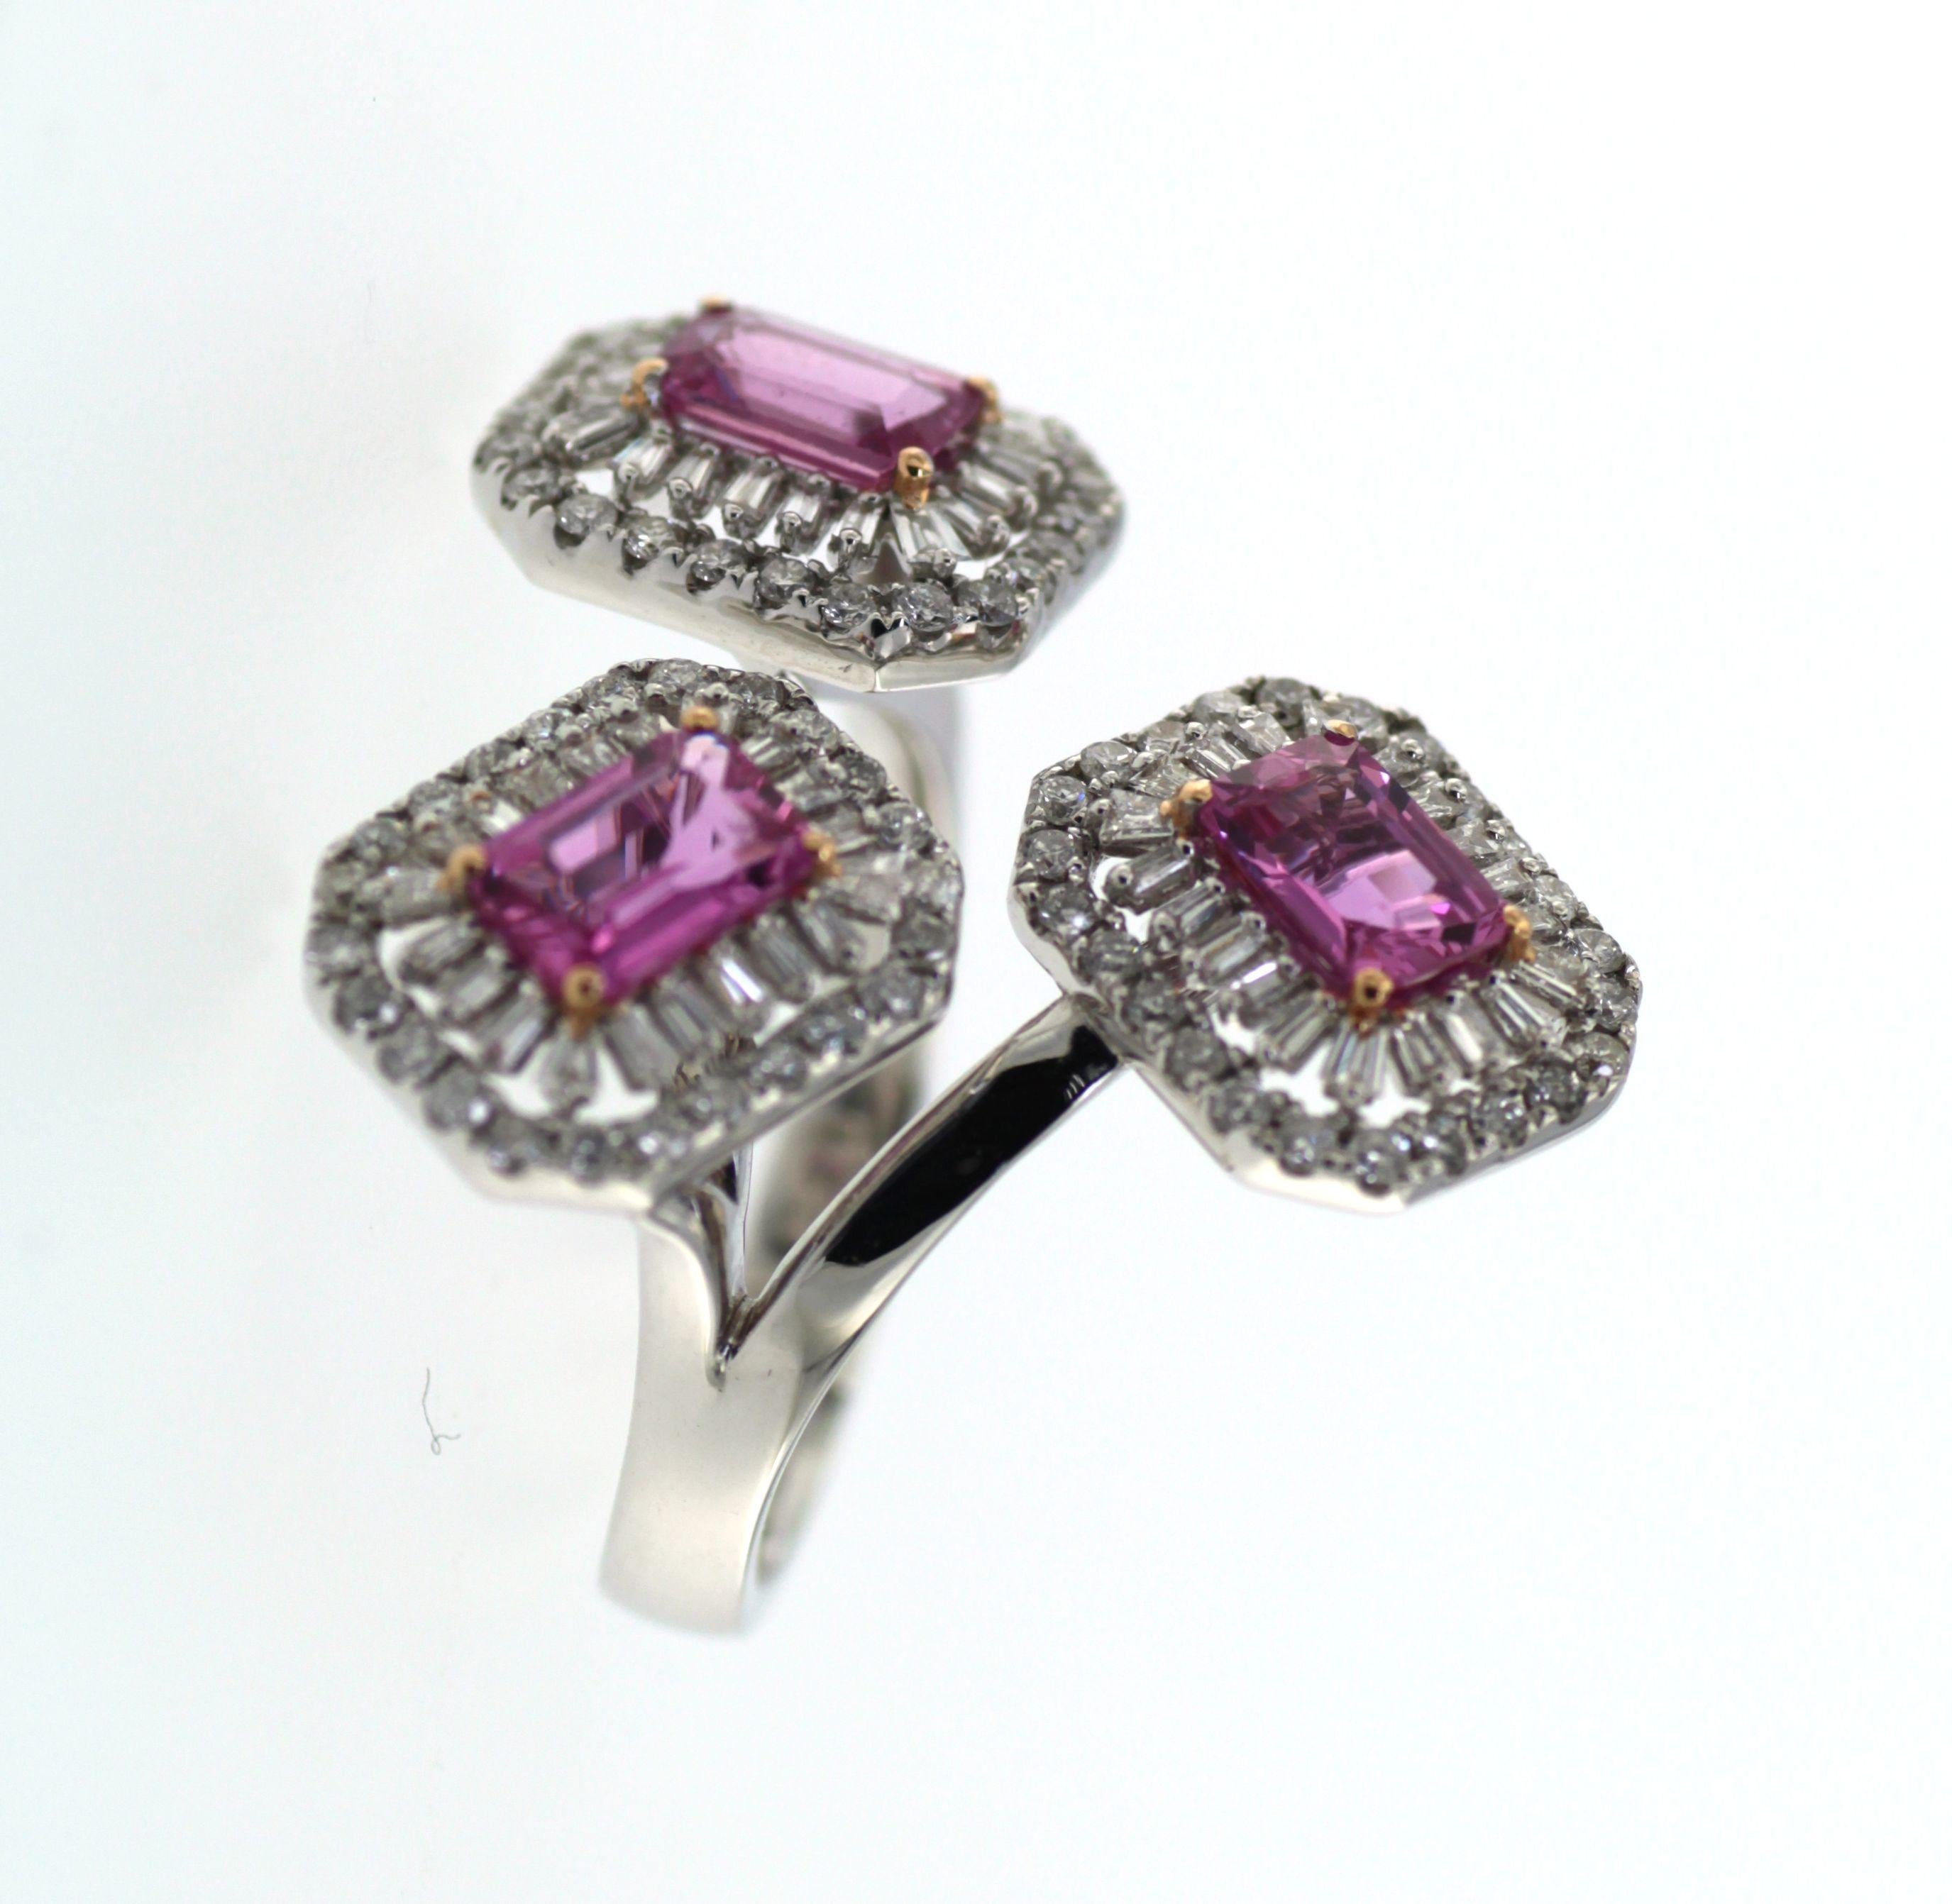 Eleganz und zeitlose Raffinesse treffen in diesem bemerkenswerten Ring aufeinander, der die Faszination seltener Edelsteine mit dem Glanz von Edelmetall harmonisch verbindet. Das Design wird von drei bezaubernden rosa Saphiren mit einem